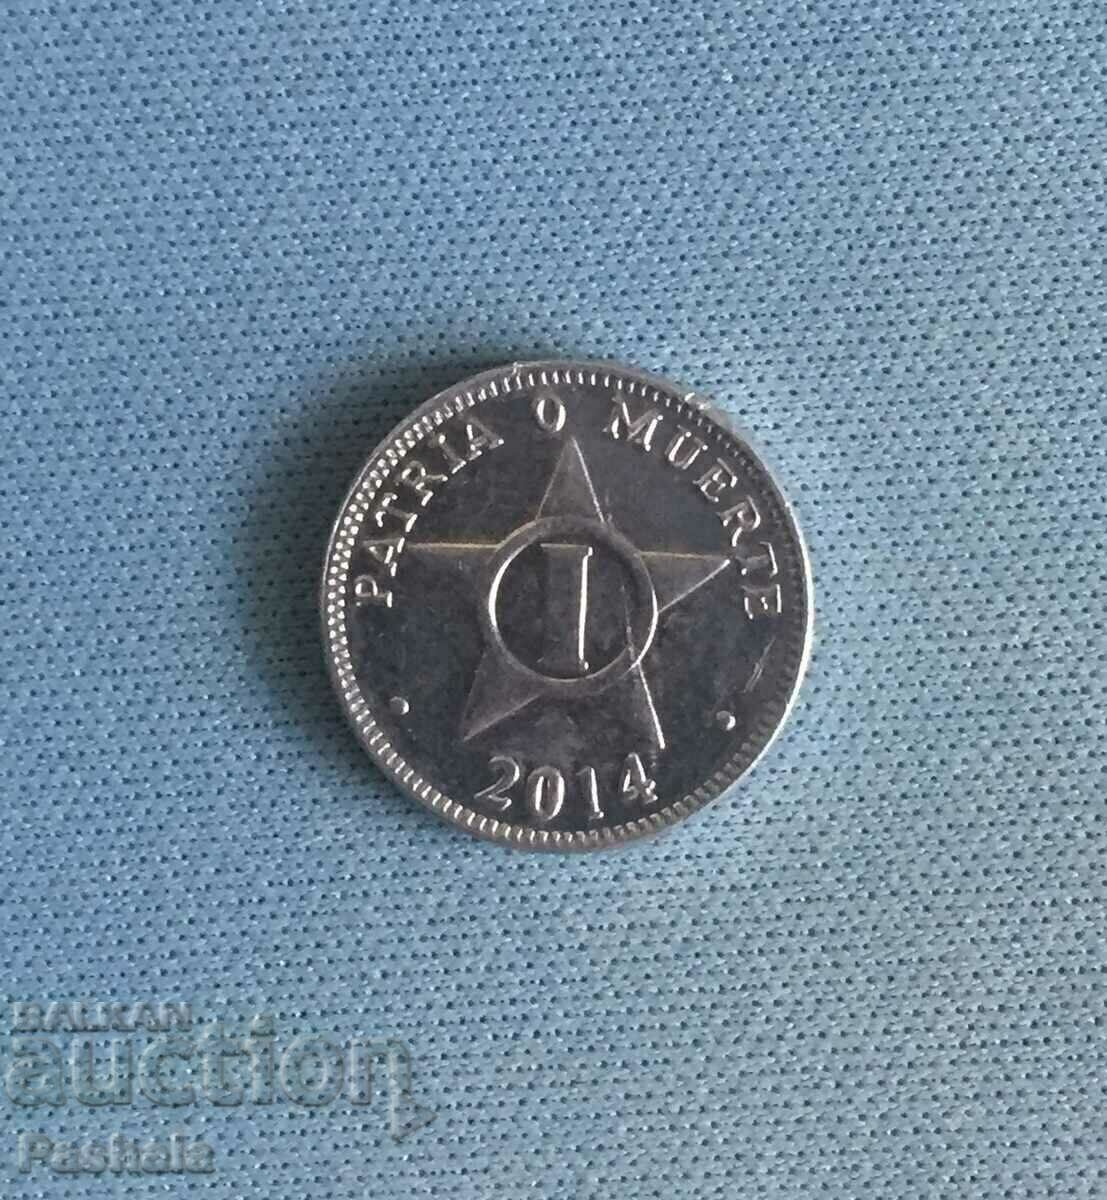 Cuba 1 centavo 2014